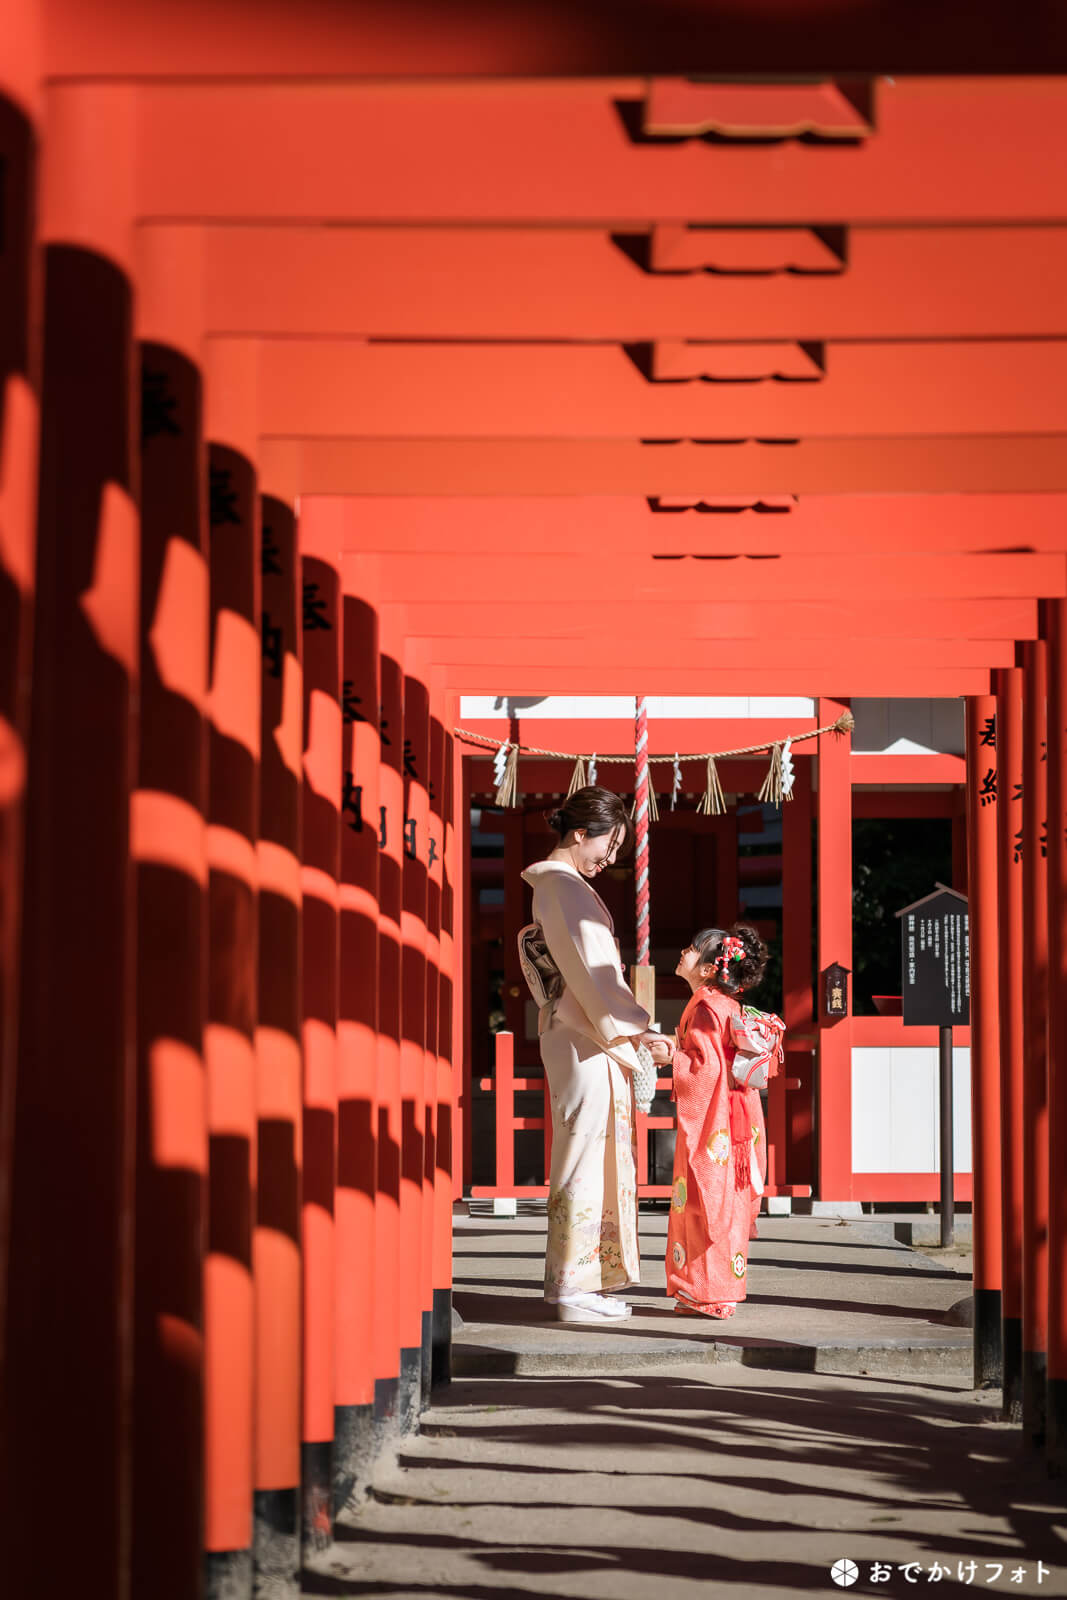 住吉神社で七五三の出張撮影